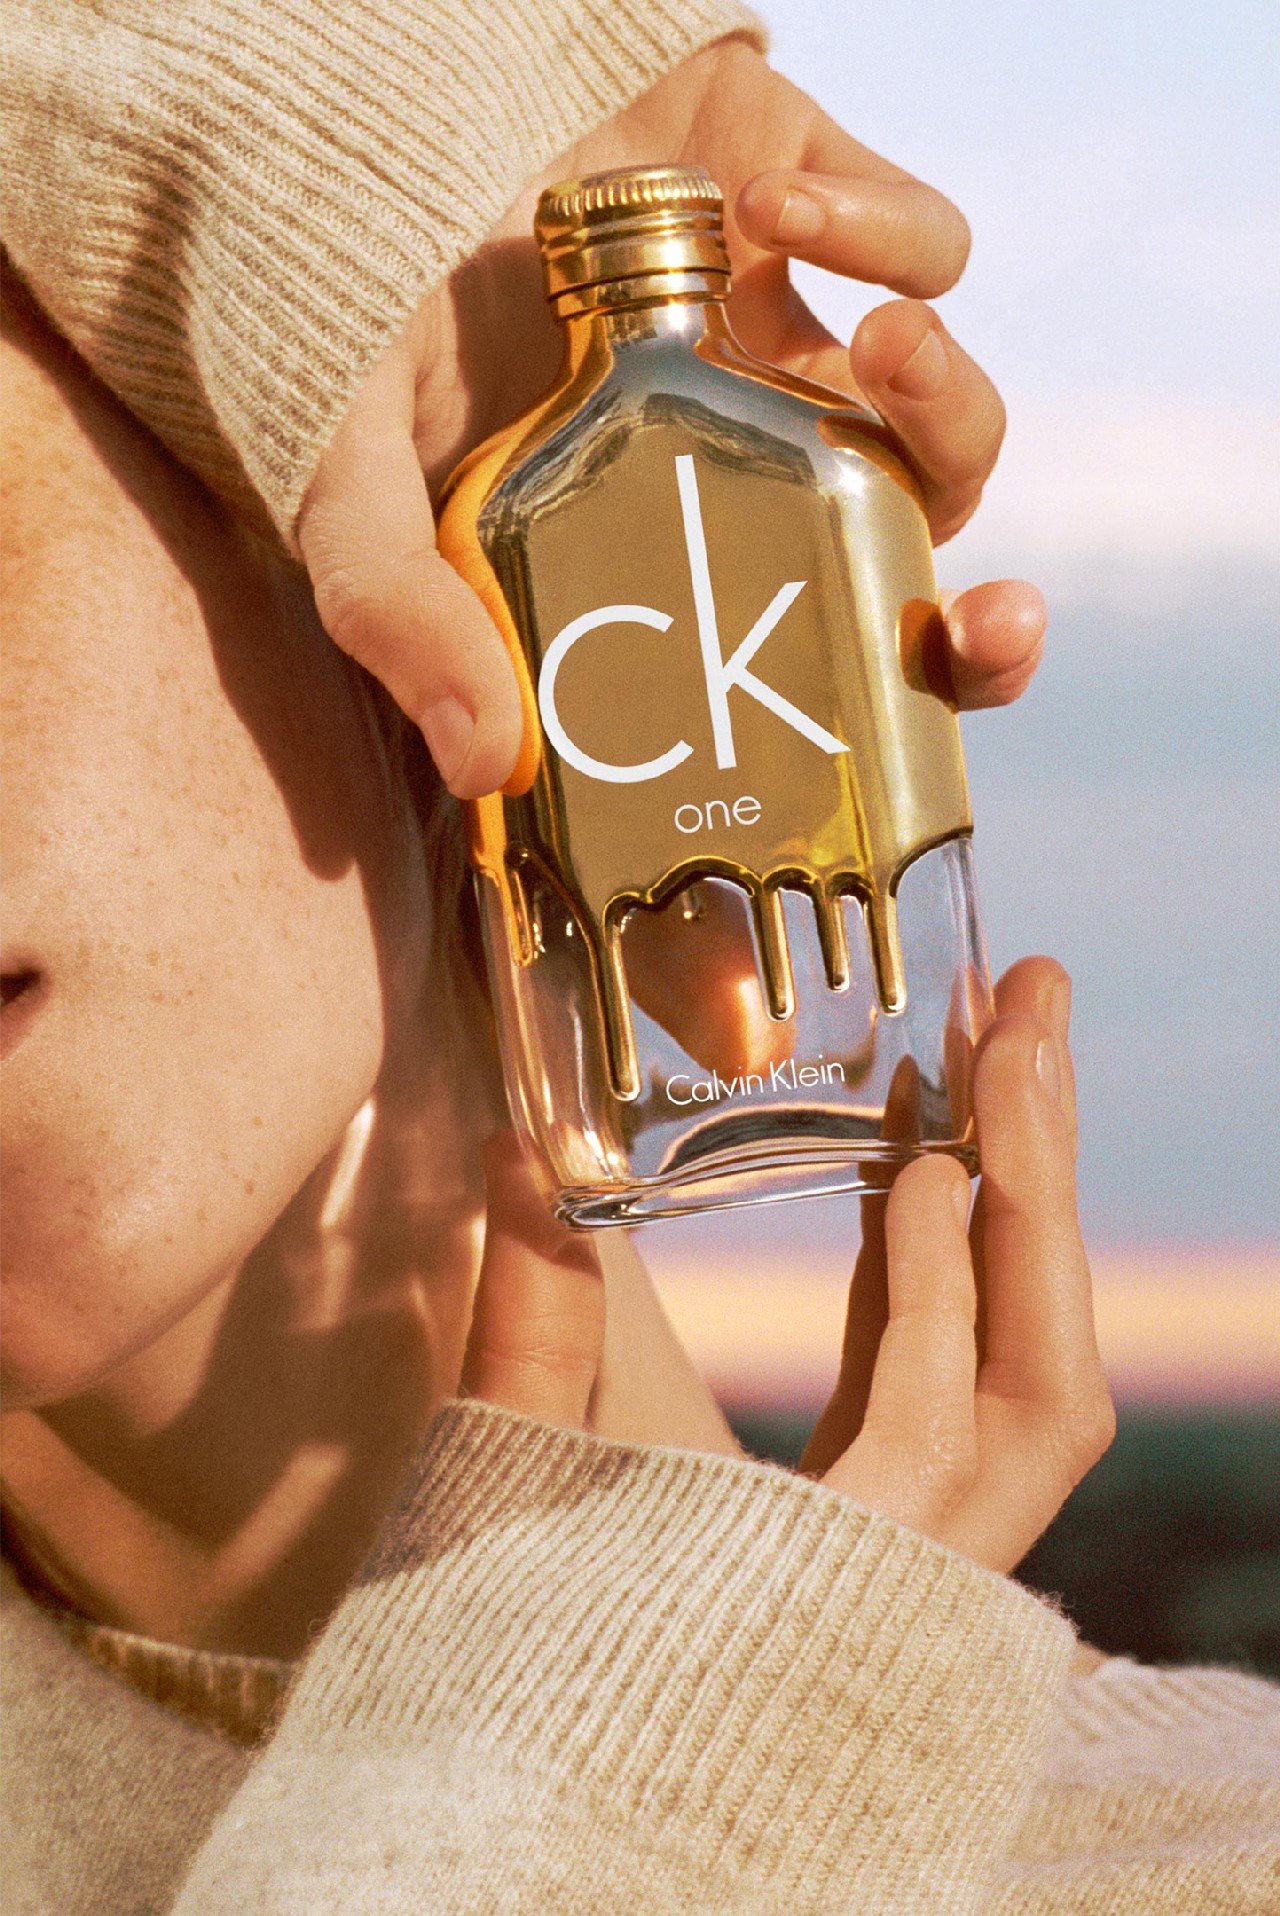 CK One Gold profumo: la nuova fragranza in limited edition, le foto